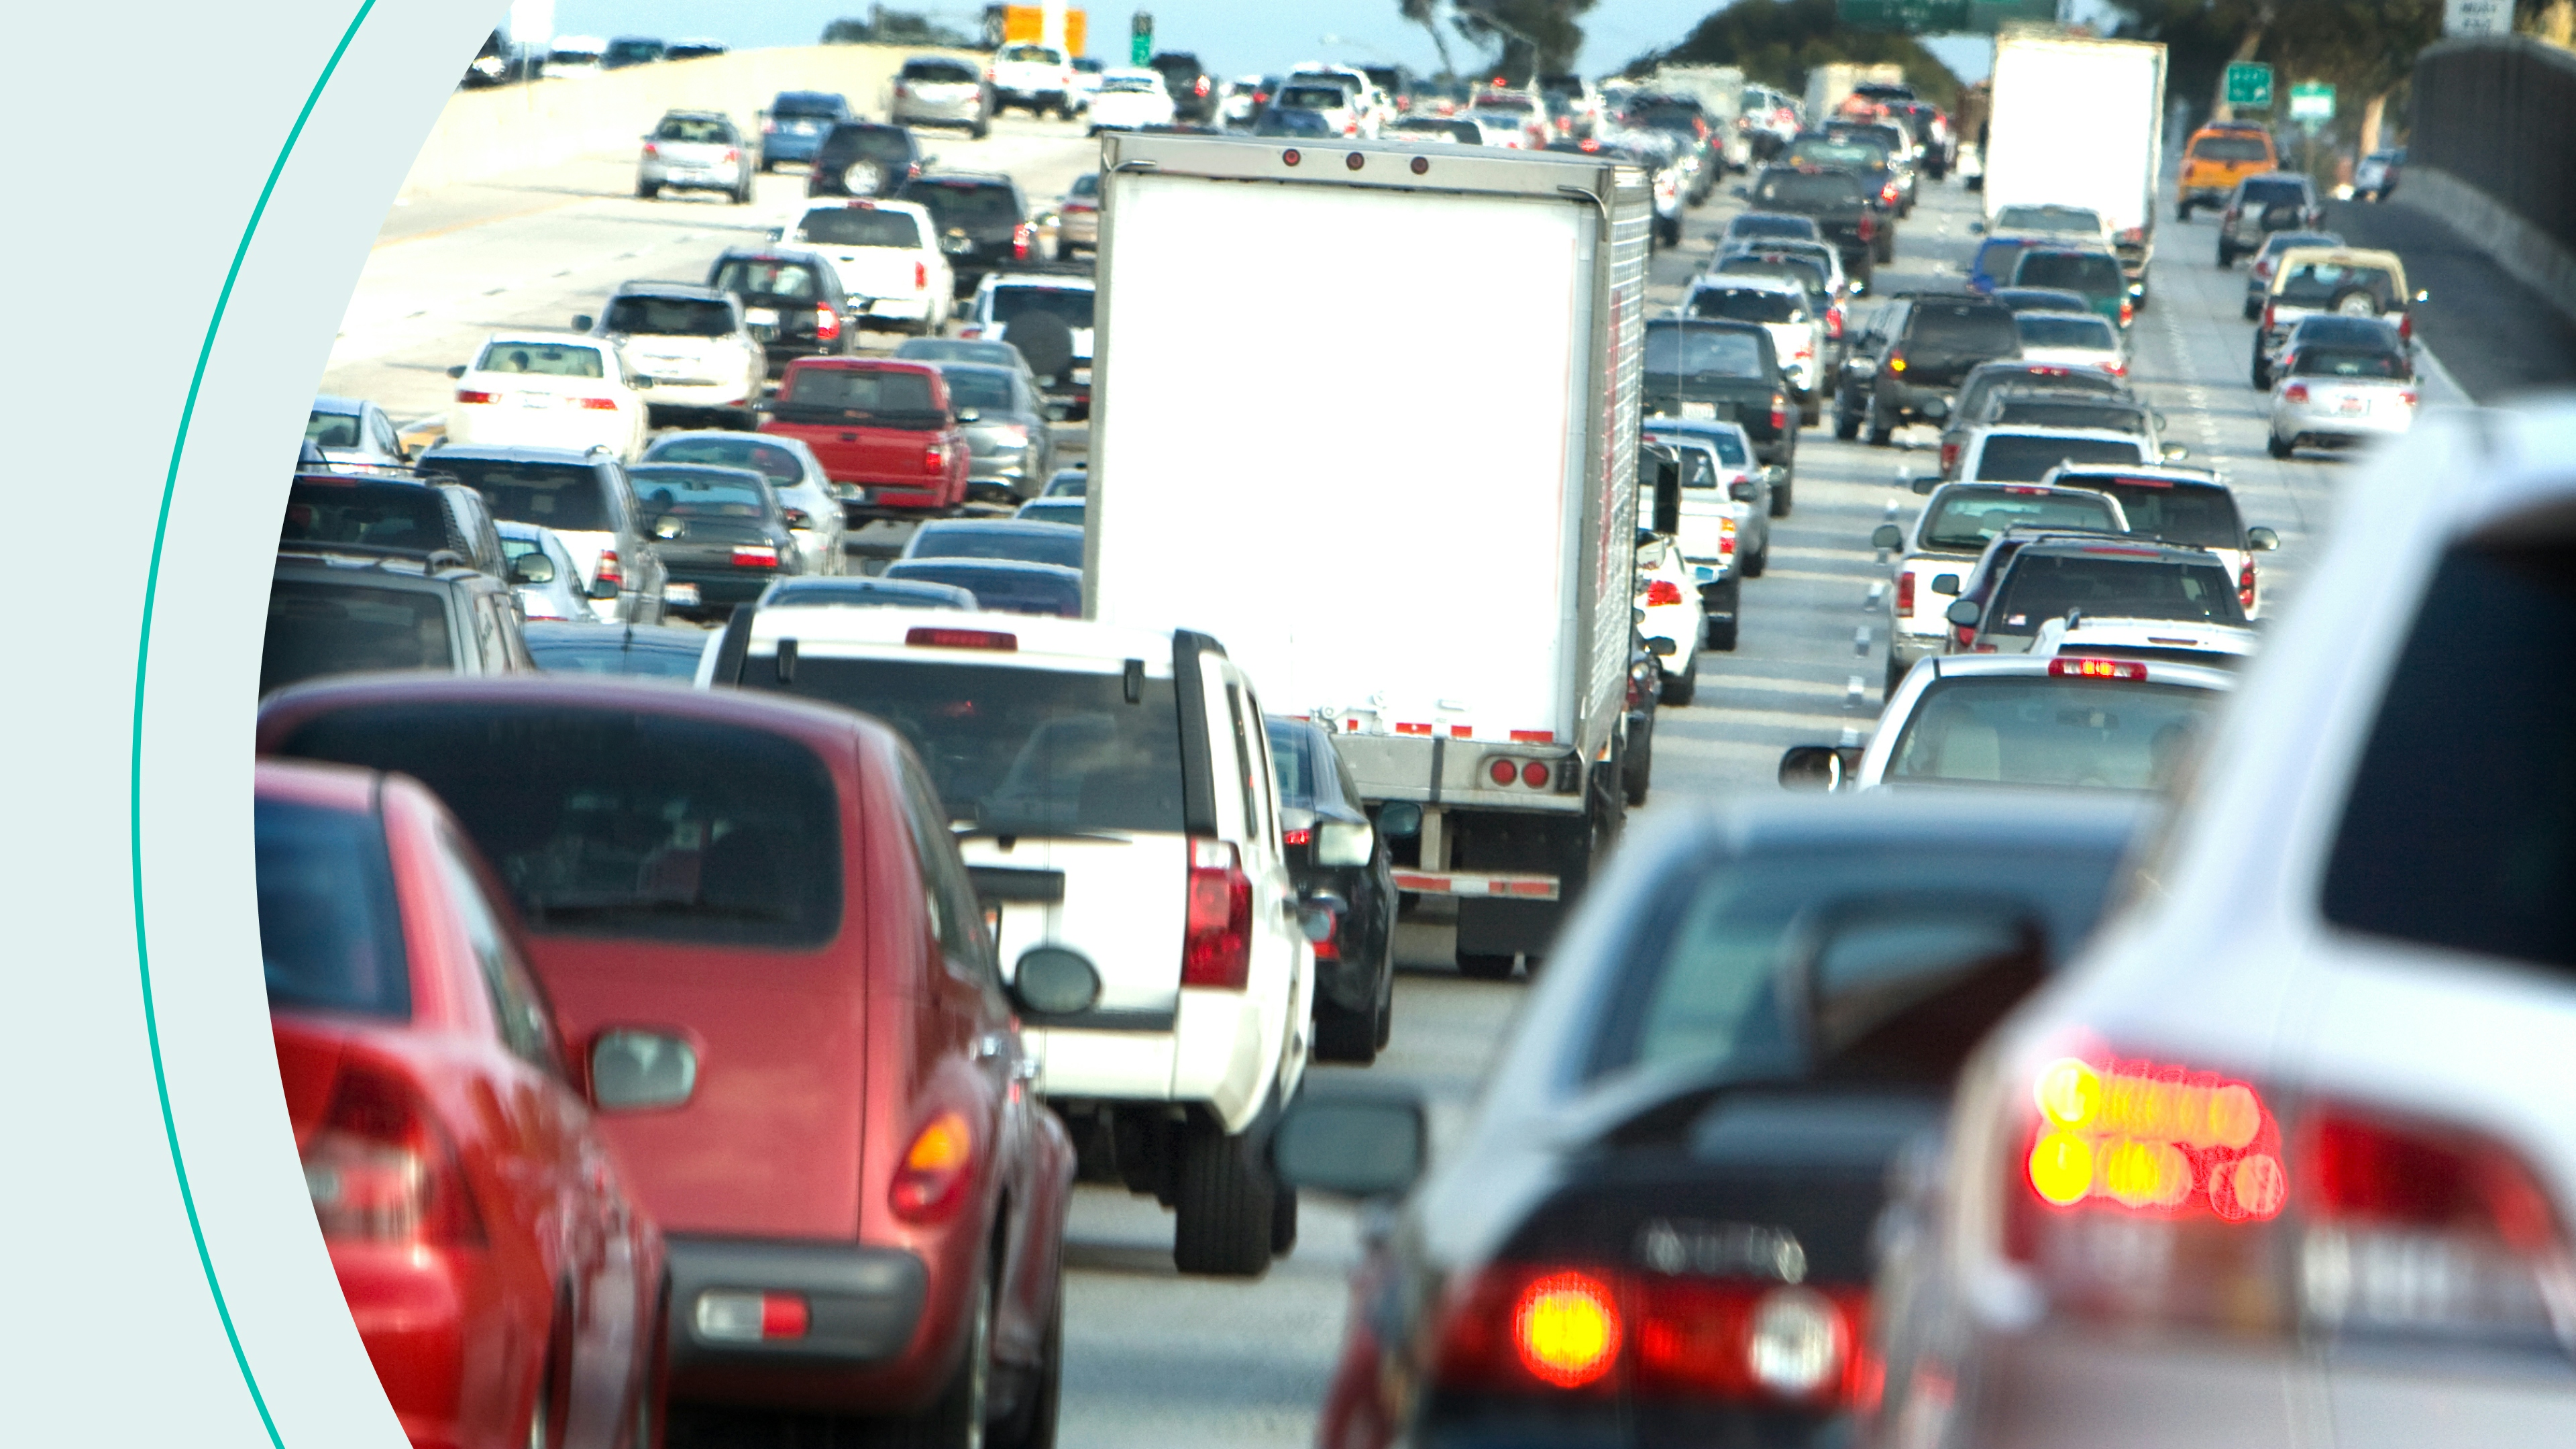 A traffic jam on a California freeway.